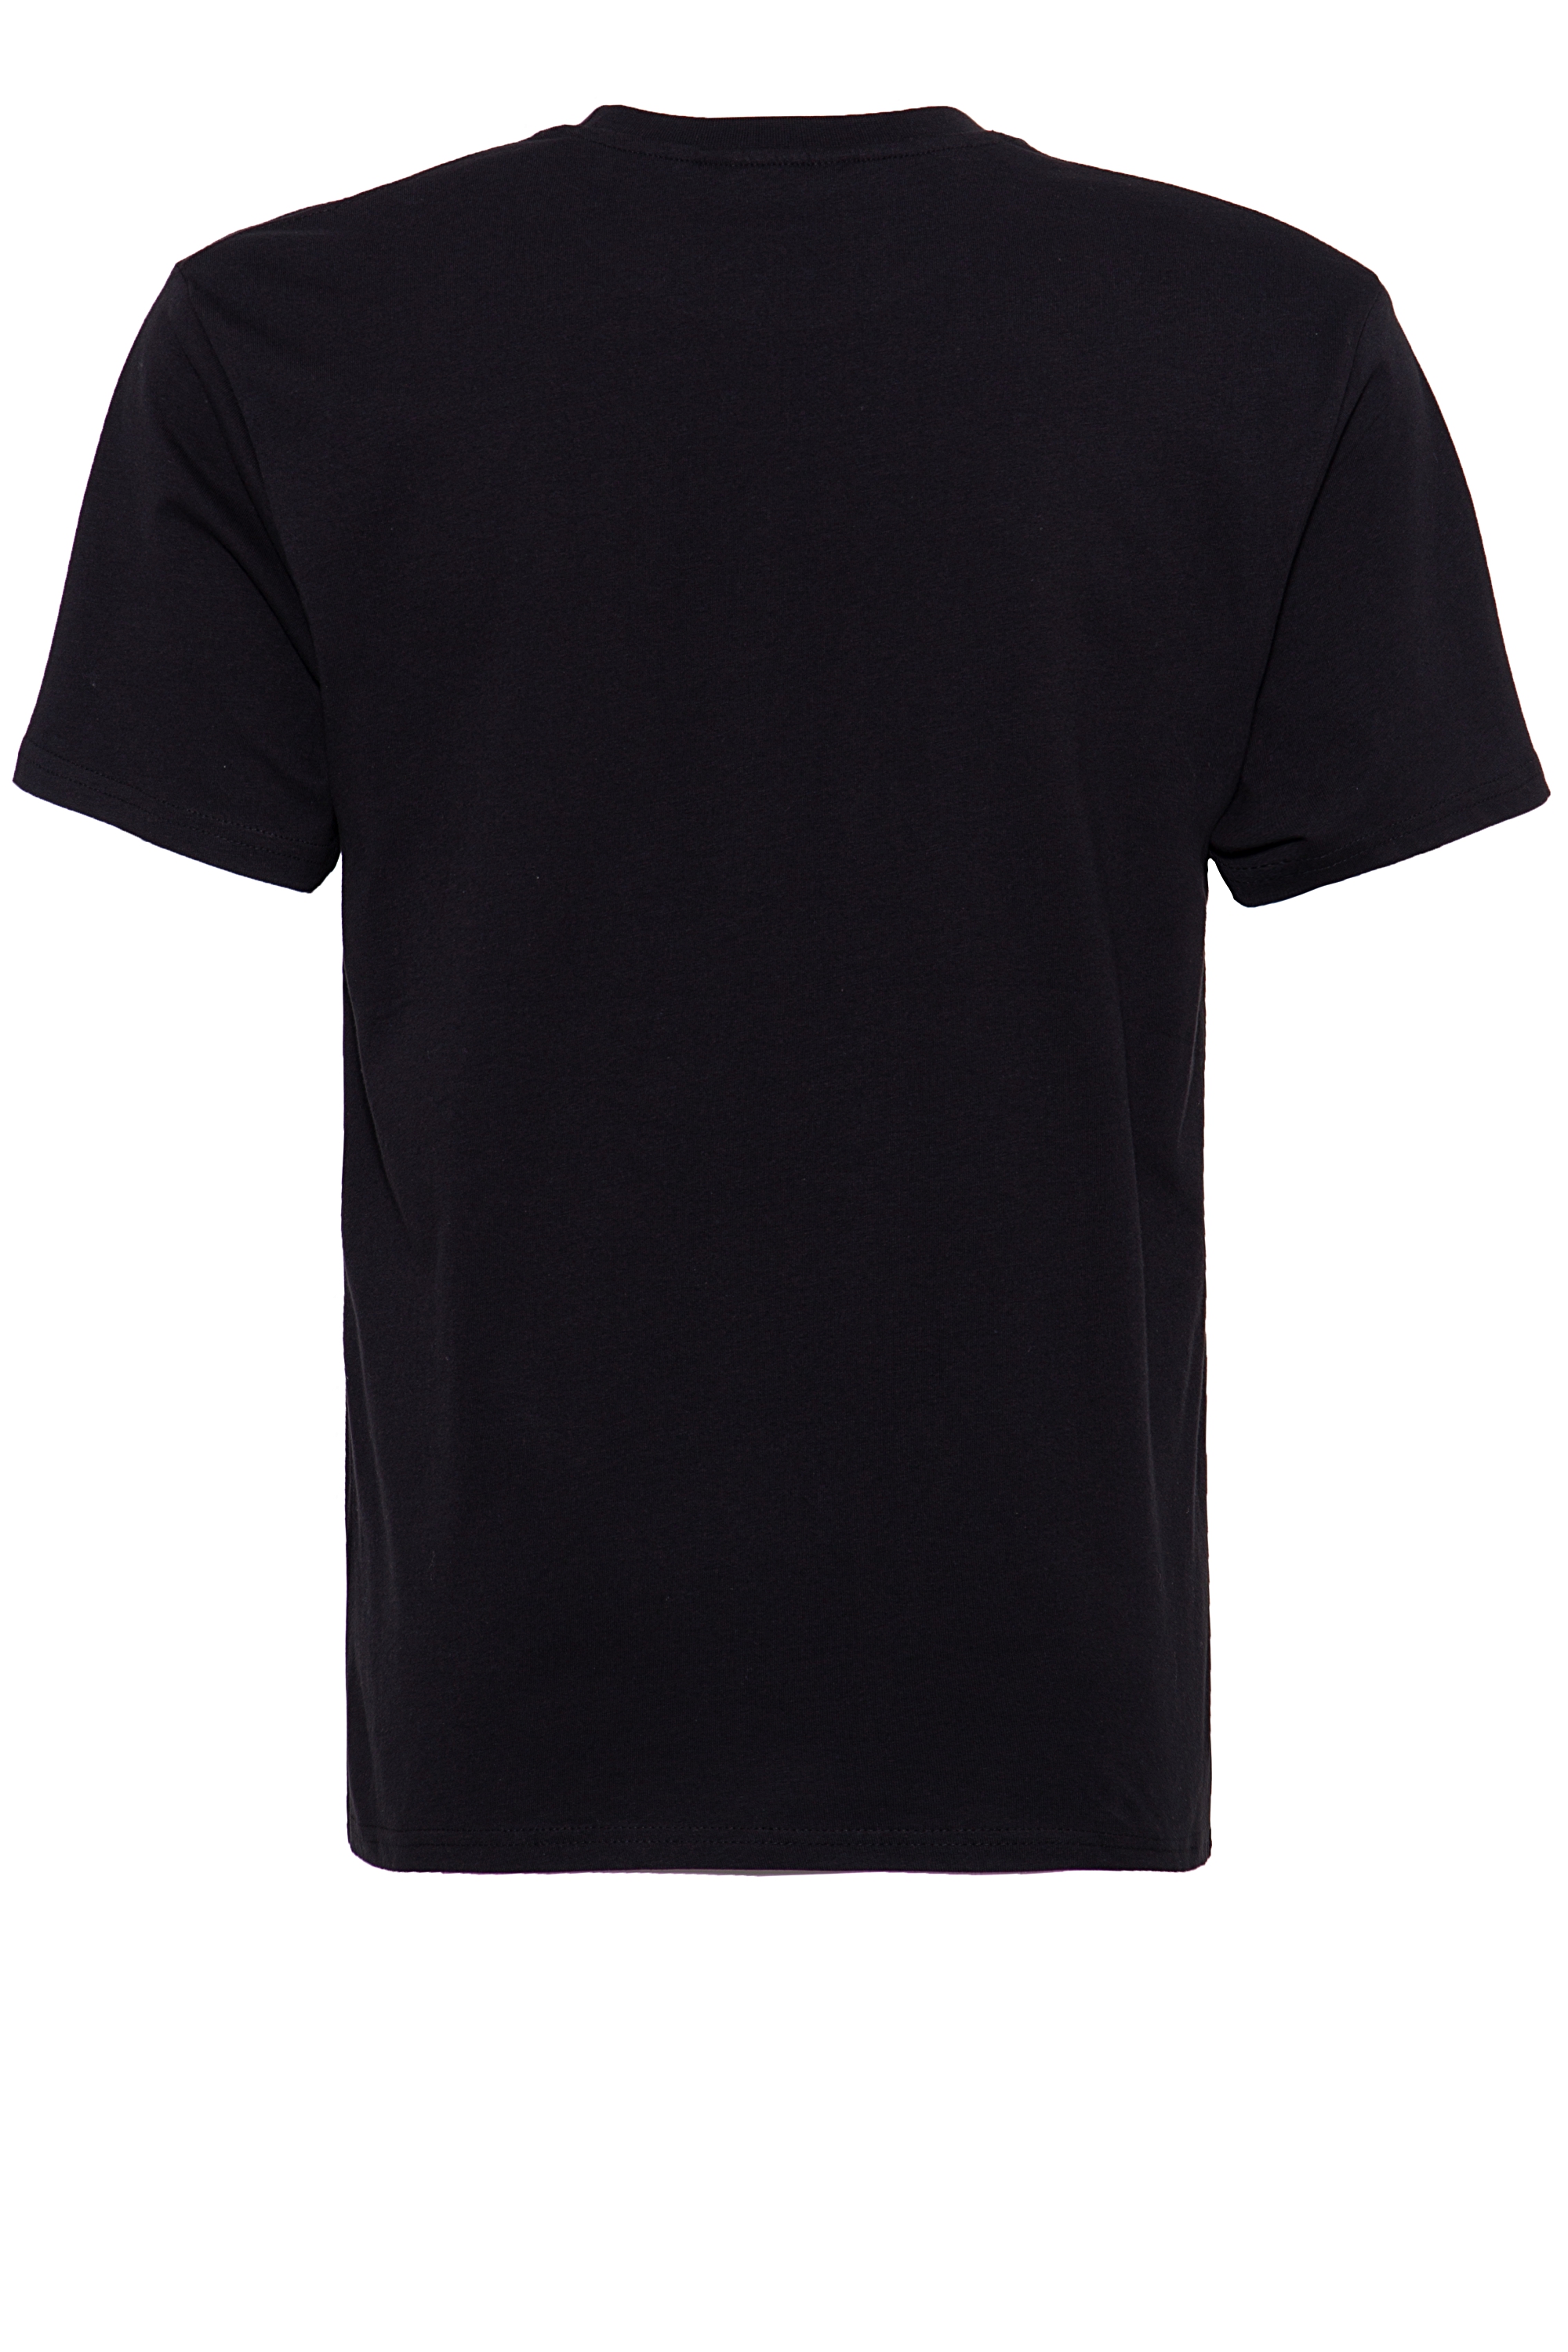 King Kerosin T-Shirt - El Paso XL